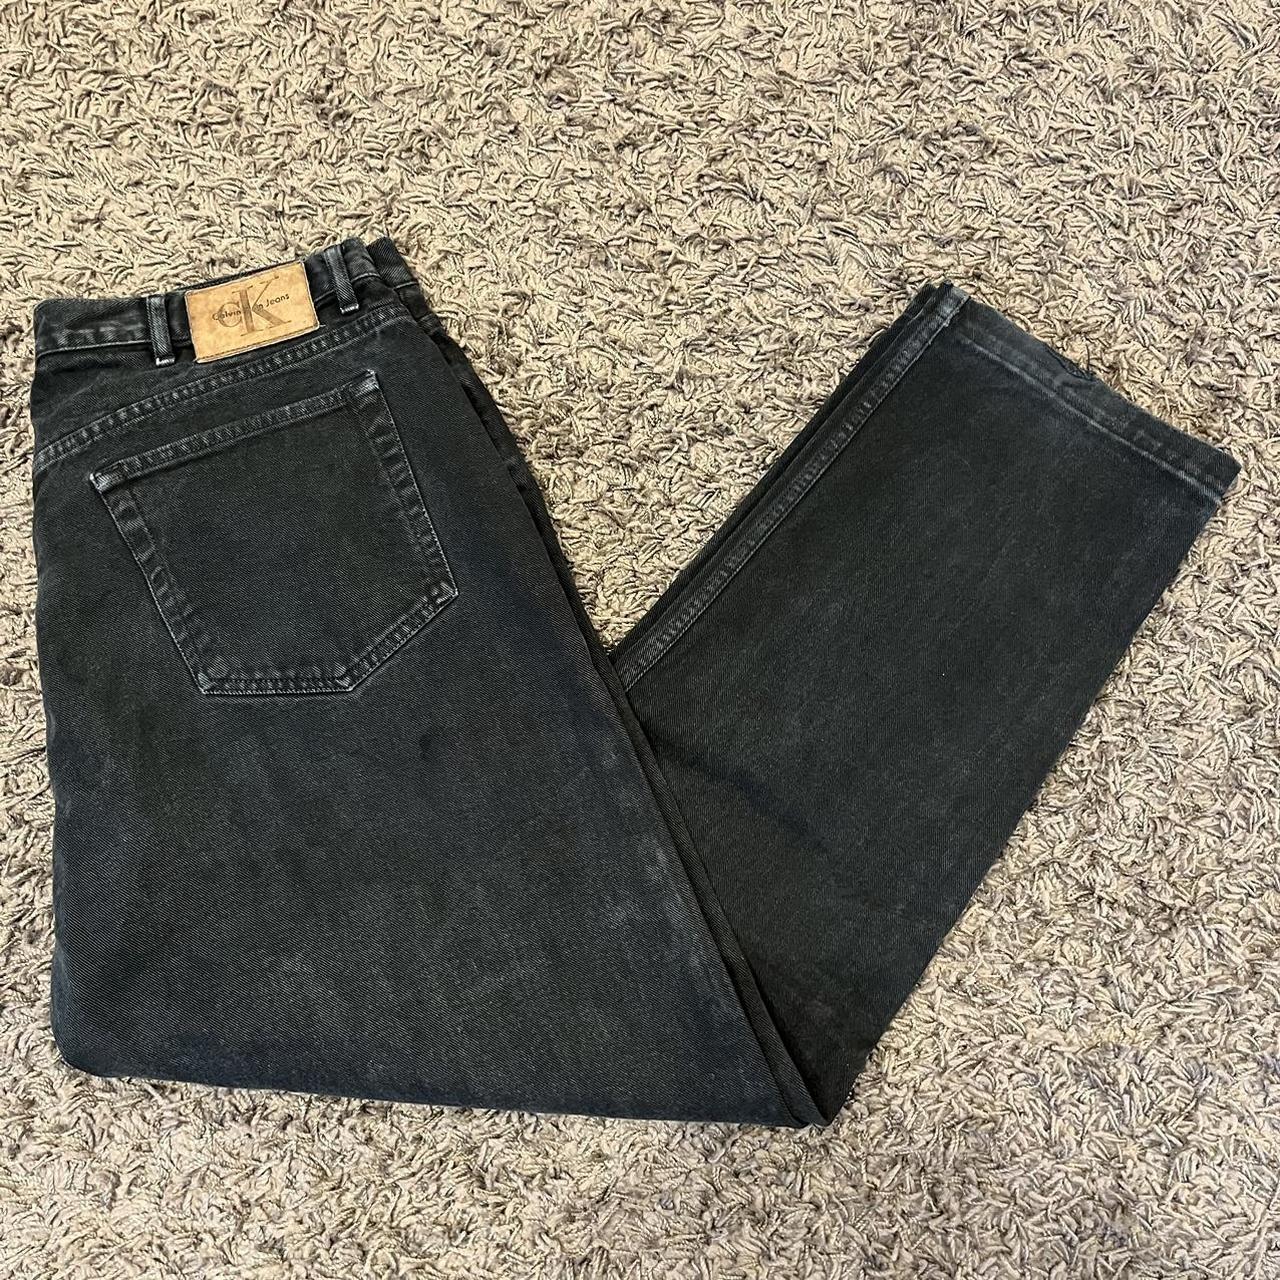 Vintage 90s Calvin Klein Black Denim Loose Fit Jeans... - Depop